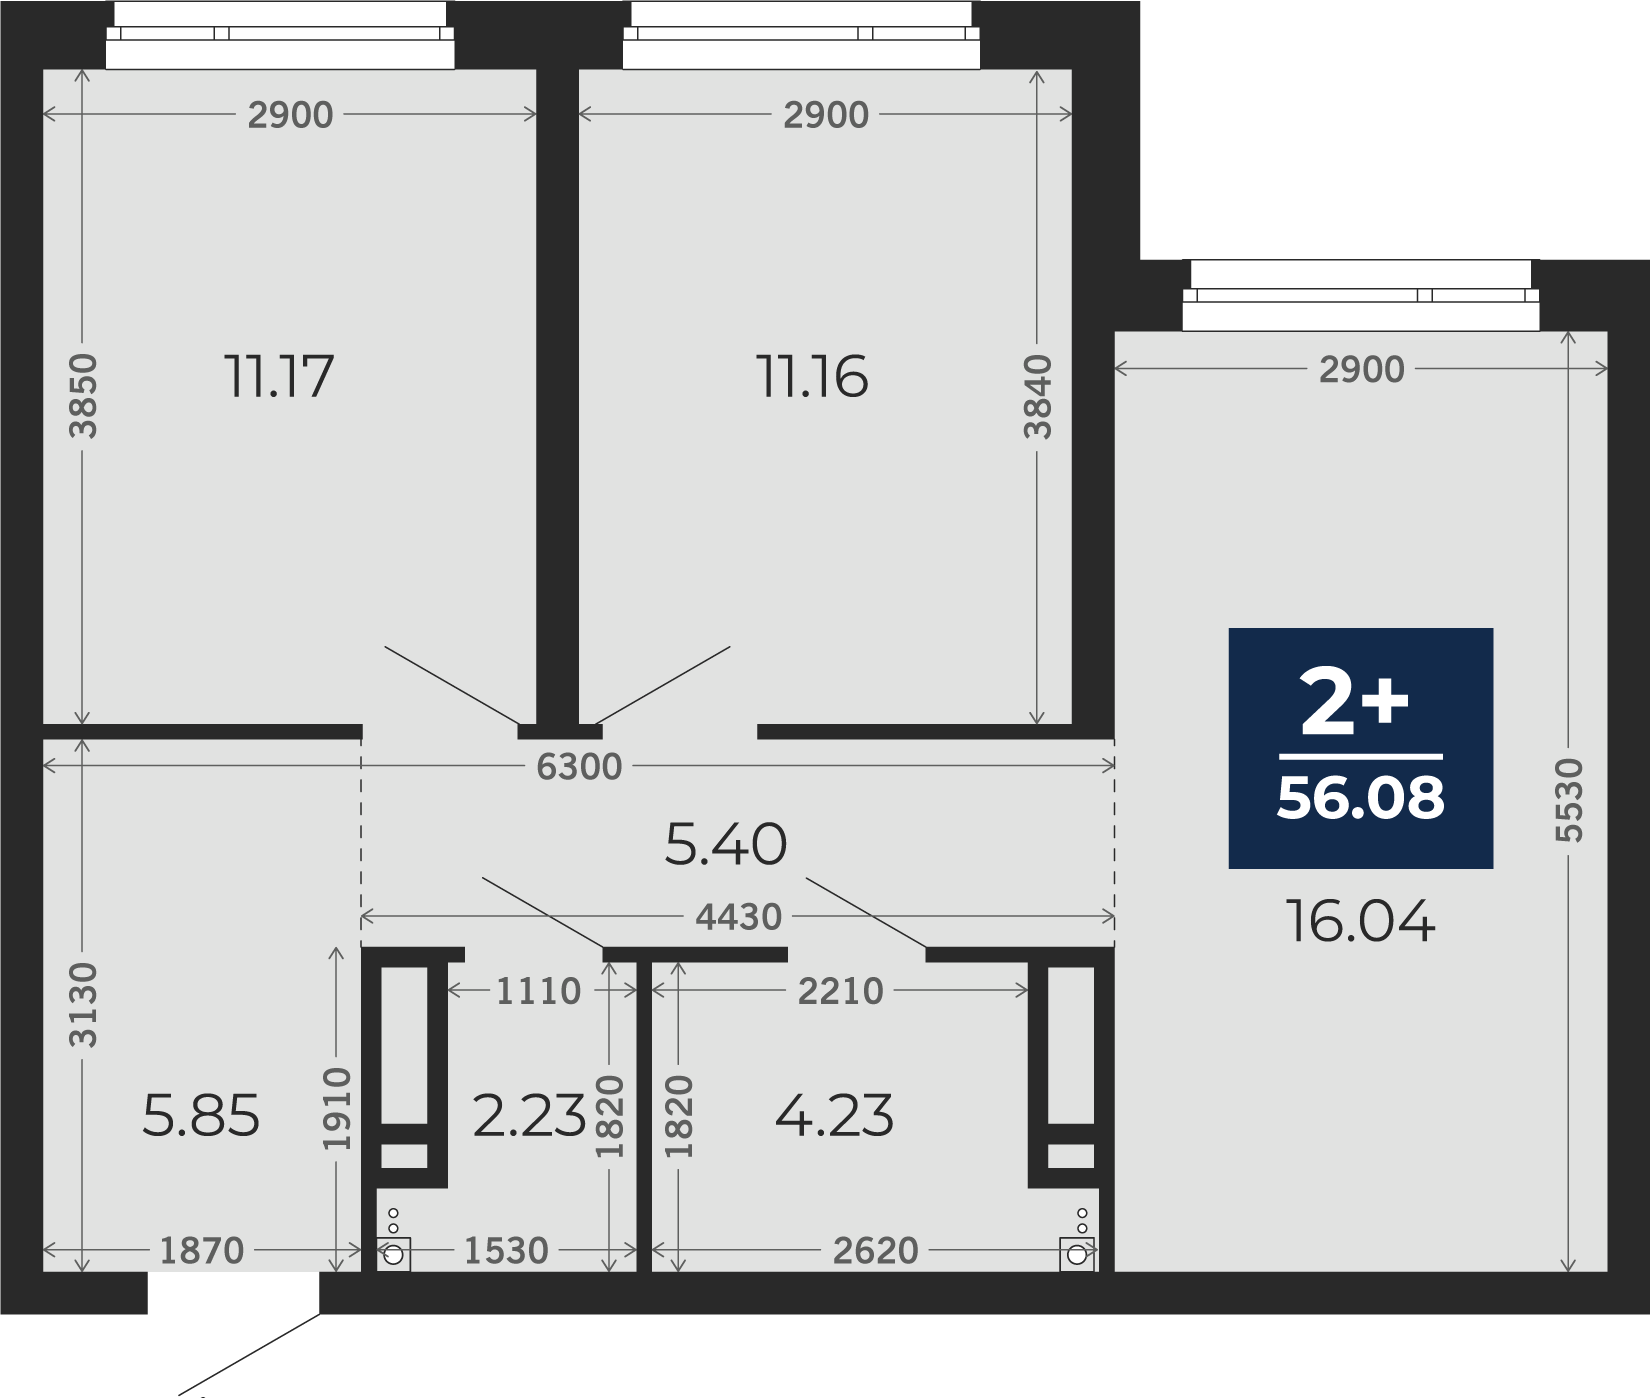 Квартира № 204, 2-комнатная, 56.08 кв. м, 10 этаж